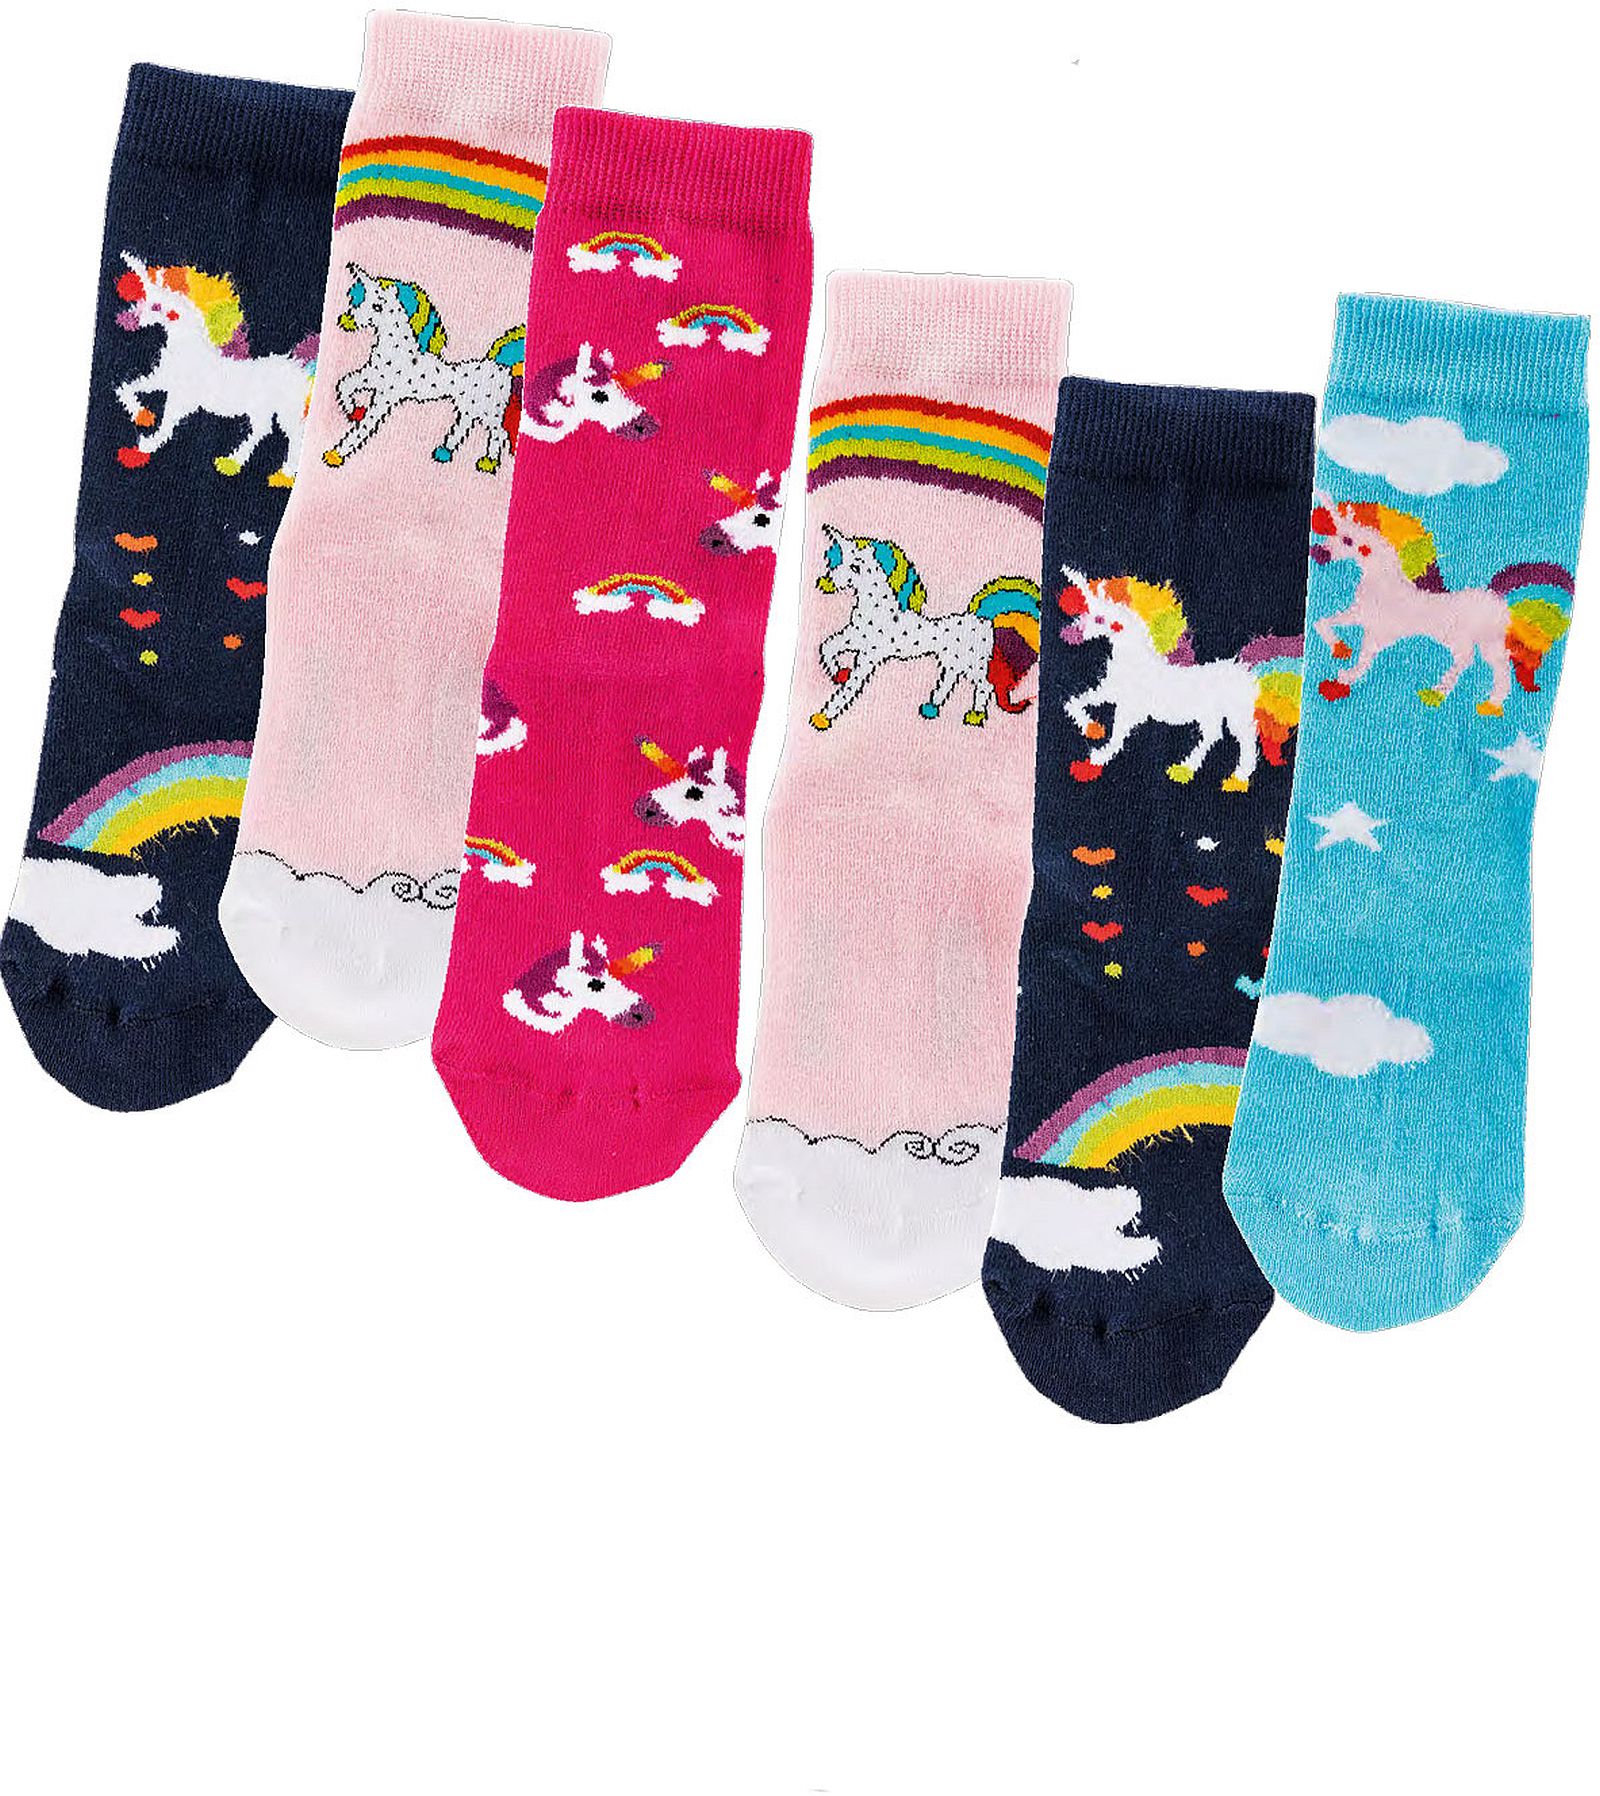  Kinder-Socken   „Einhorn“ aus weichem gekämmten Baumwolle,  3 Paar